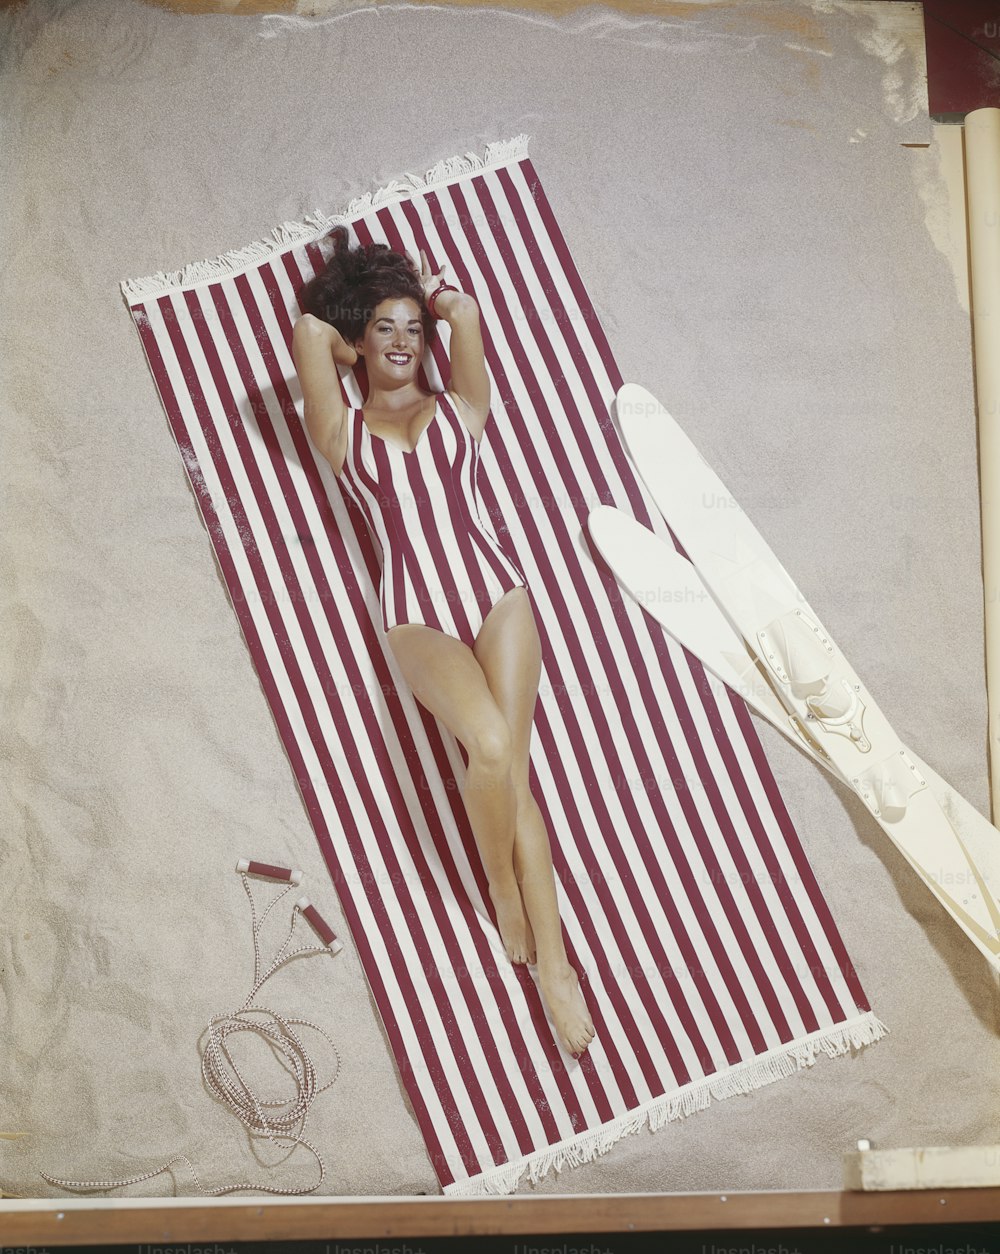 Una mujer en traje de baño acostada sobre una toalla de playa